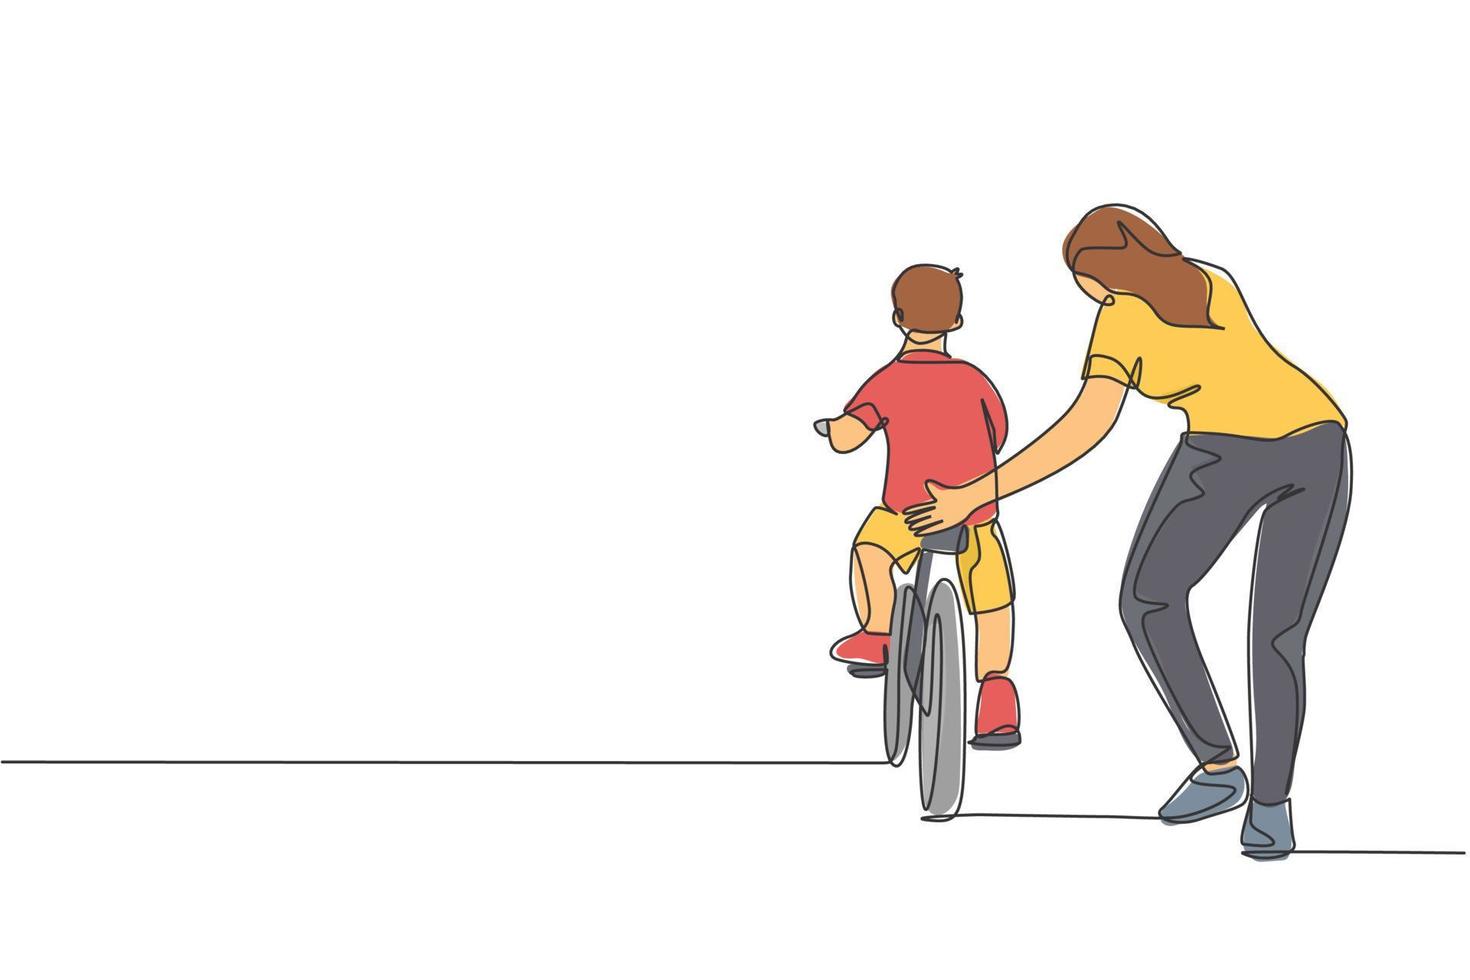 einzelne durchgehende Strichzeichnung von kleinen Kindern, die mit der Mutter im Outdoor-Park Fahrrad fahren lernen. Elternschaftsunterricht. Familienzeit-Konzept. trendige einlinie zeichnen design vektorgrafik illustration vektor